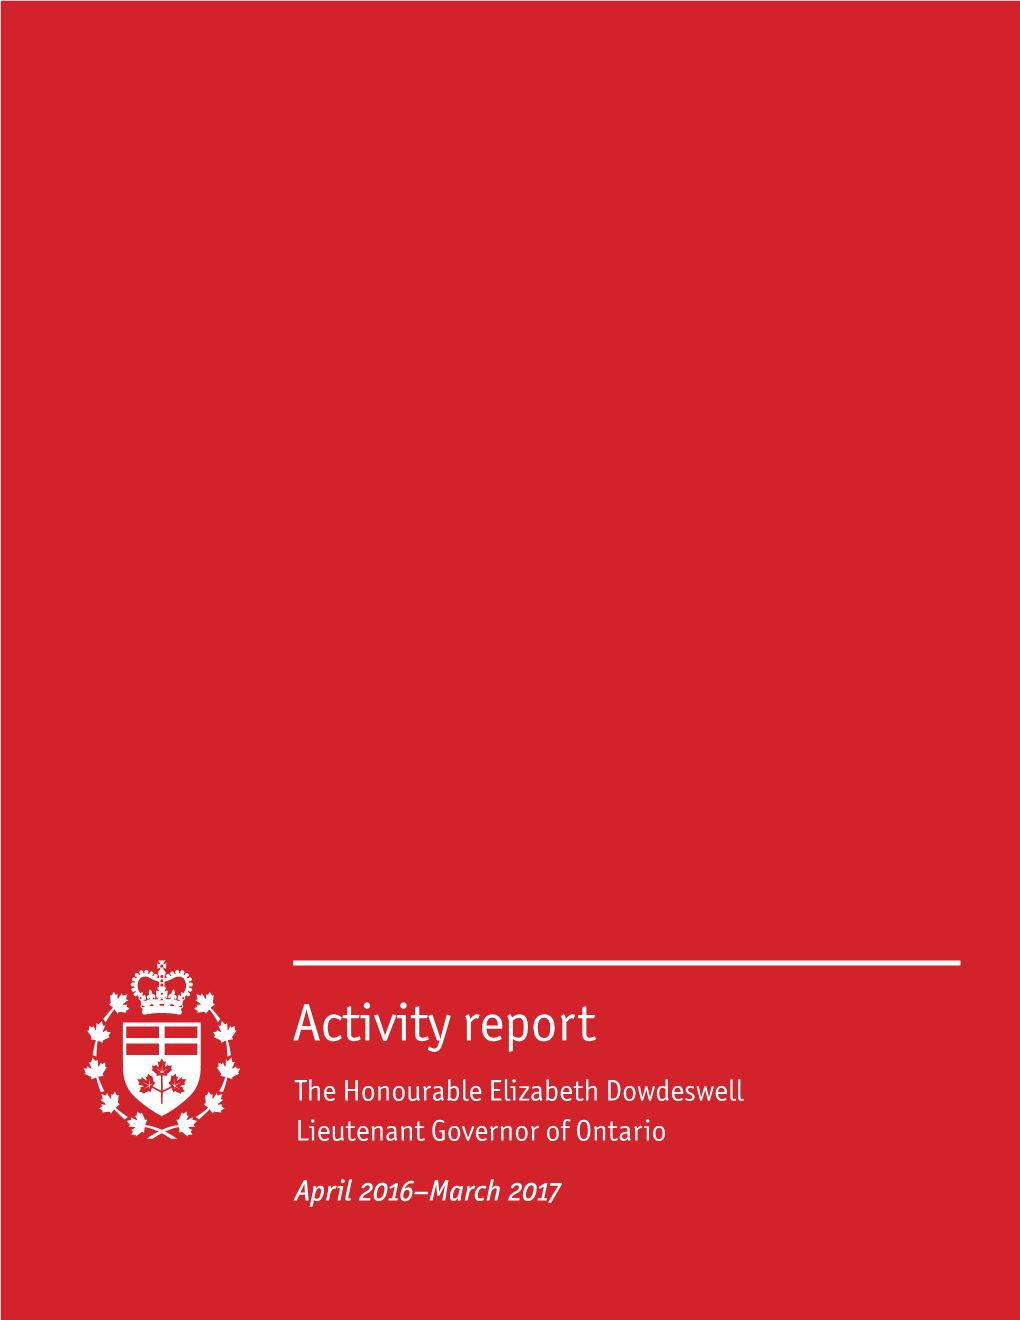 Activity Report (April 2016–March 2017): the Honourable Elizabeth